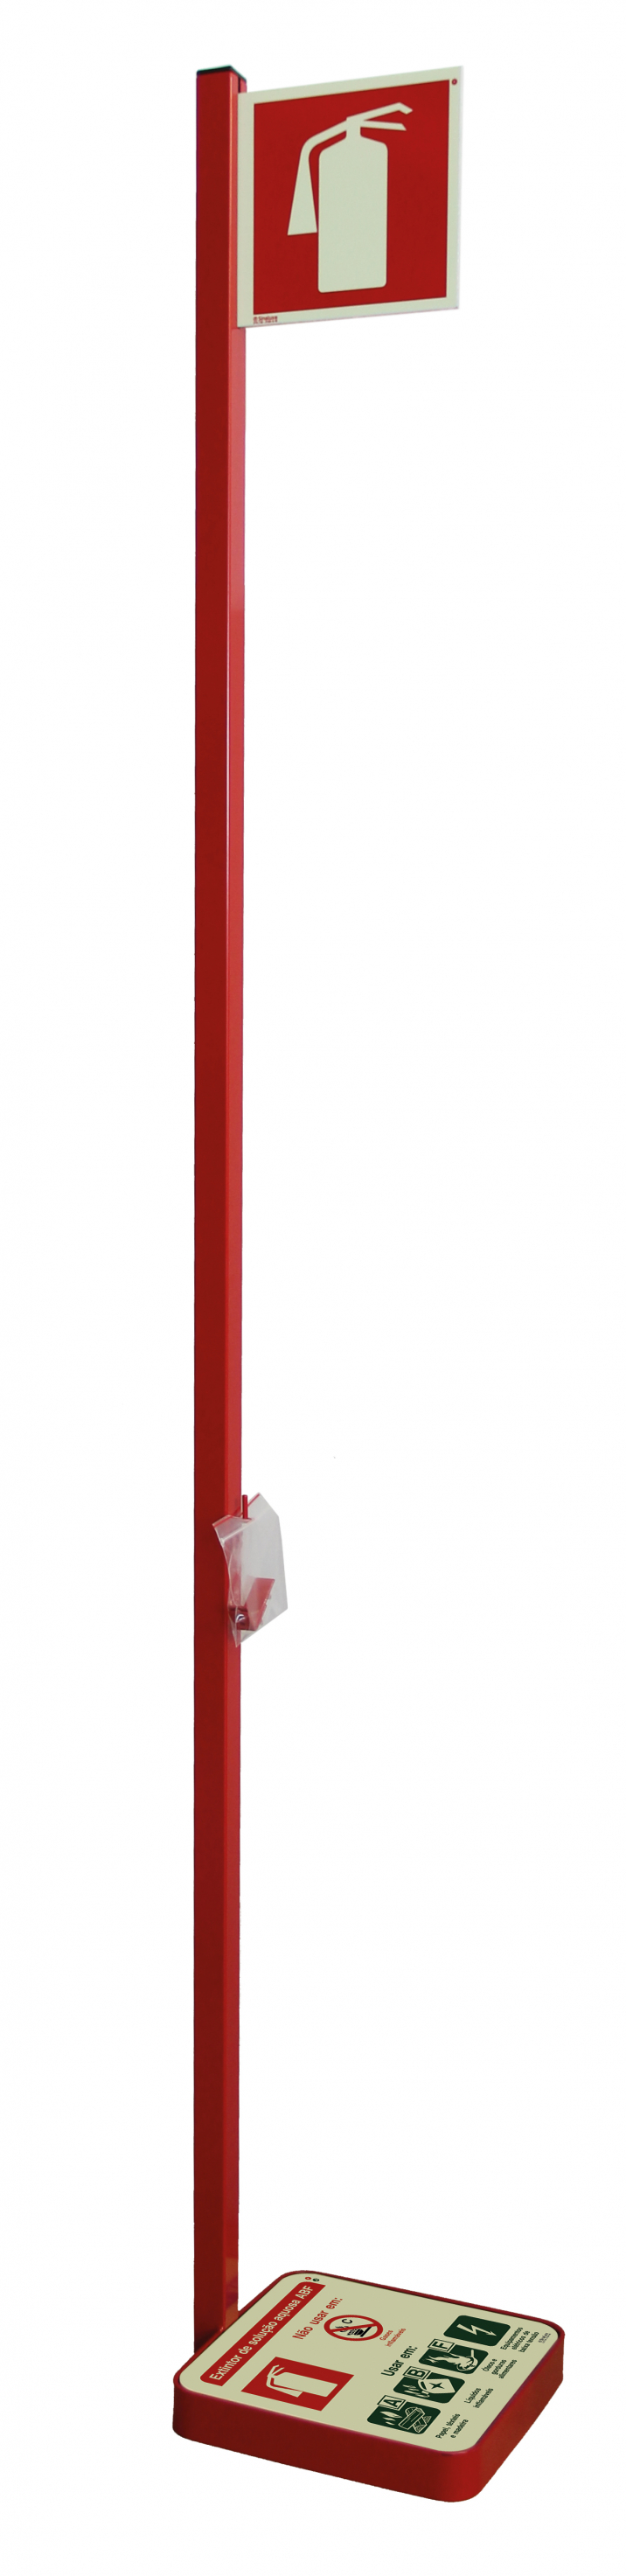 Posicionador vermelho para extintores de solução aquosa ABF